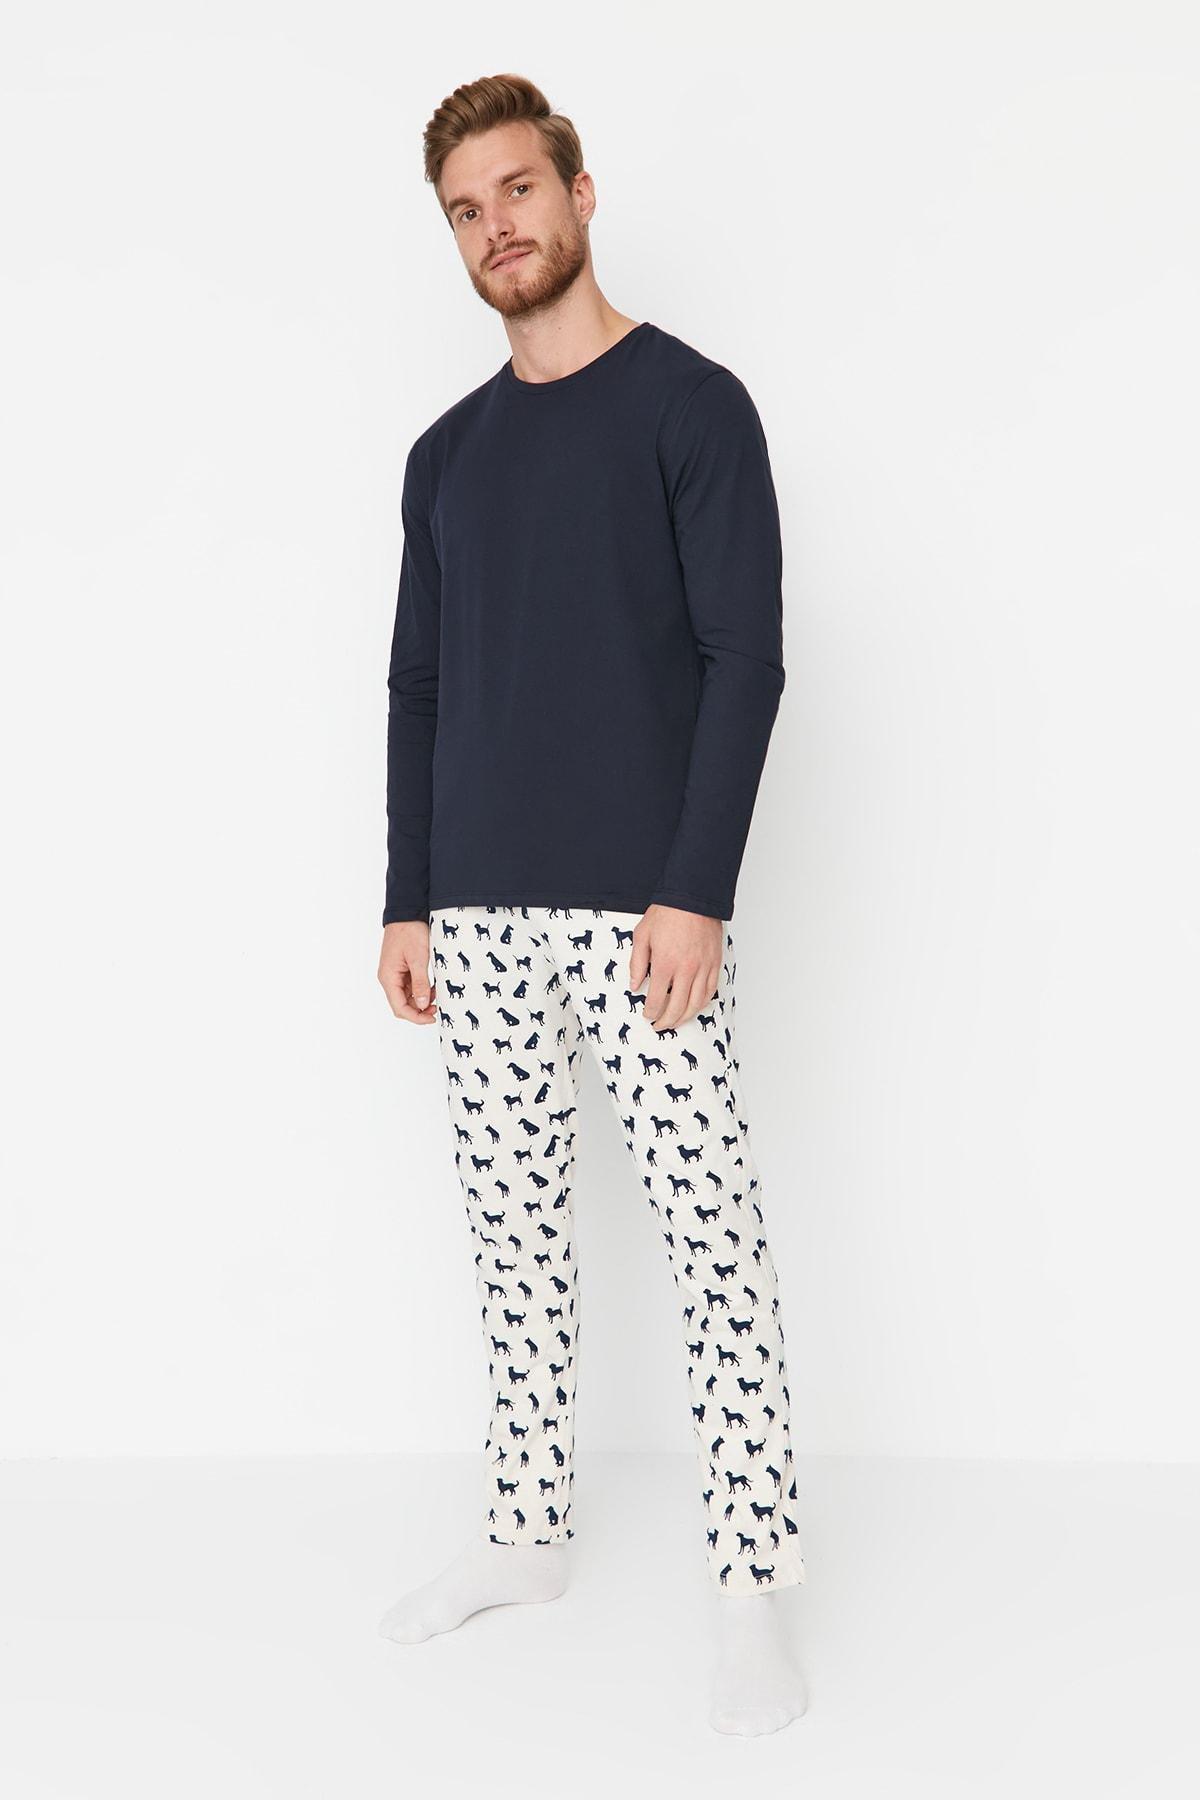 Trendyol - Navy Printed Pajama Set